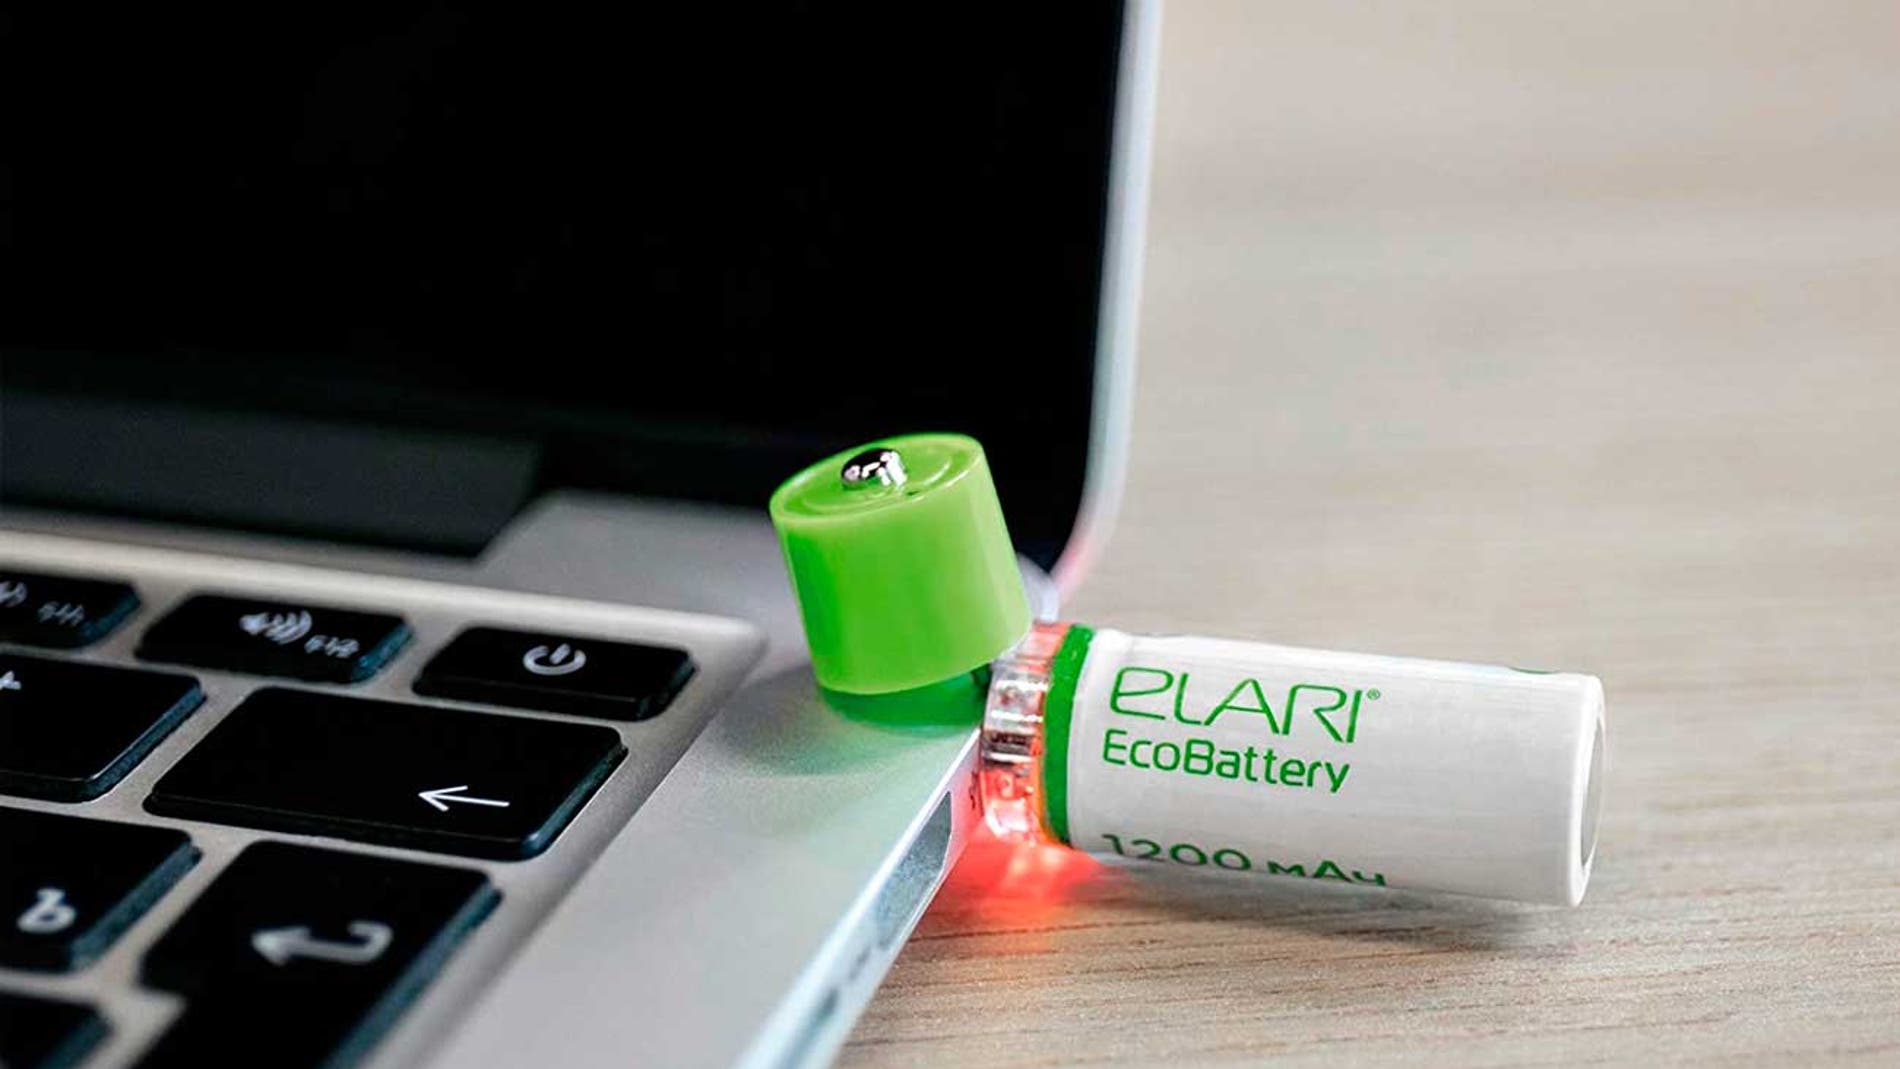 Pilas USB, la alternativa más cómoda y eficiente a las pilas tradicionales